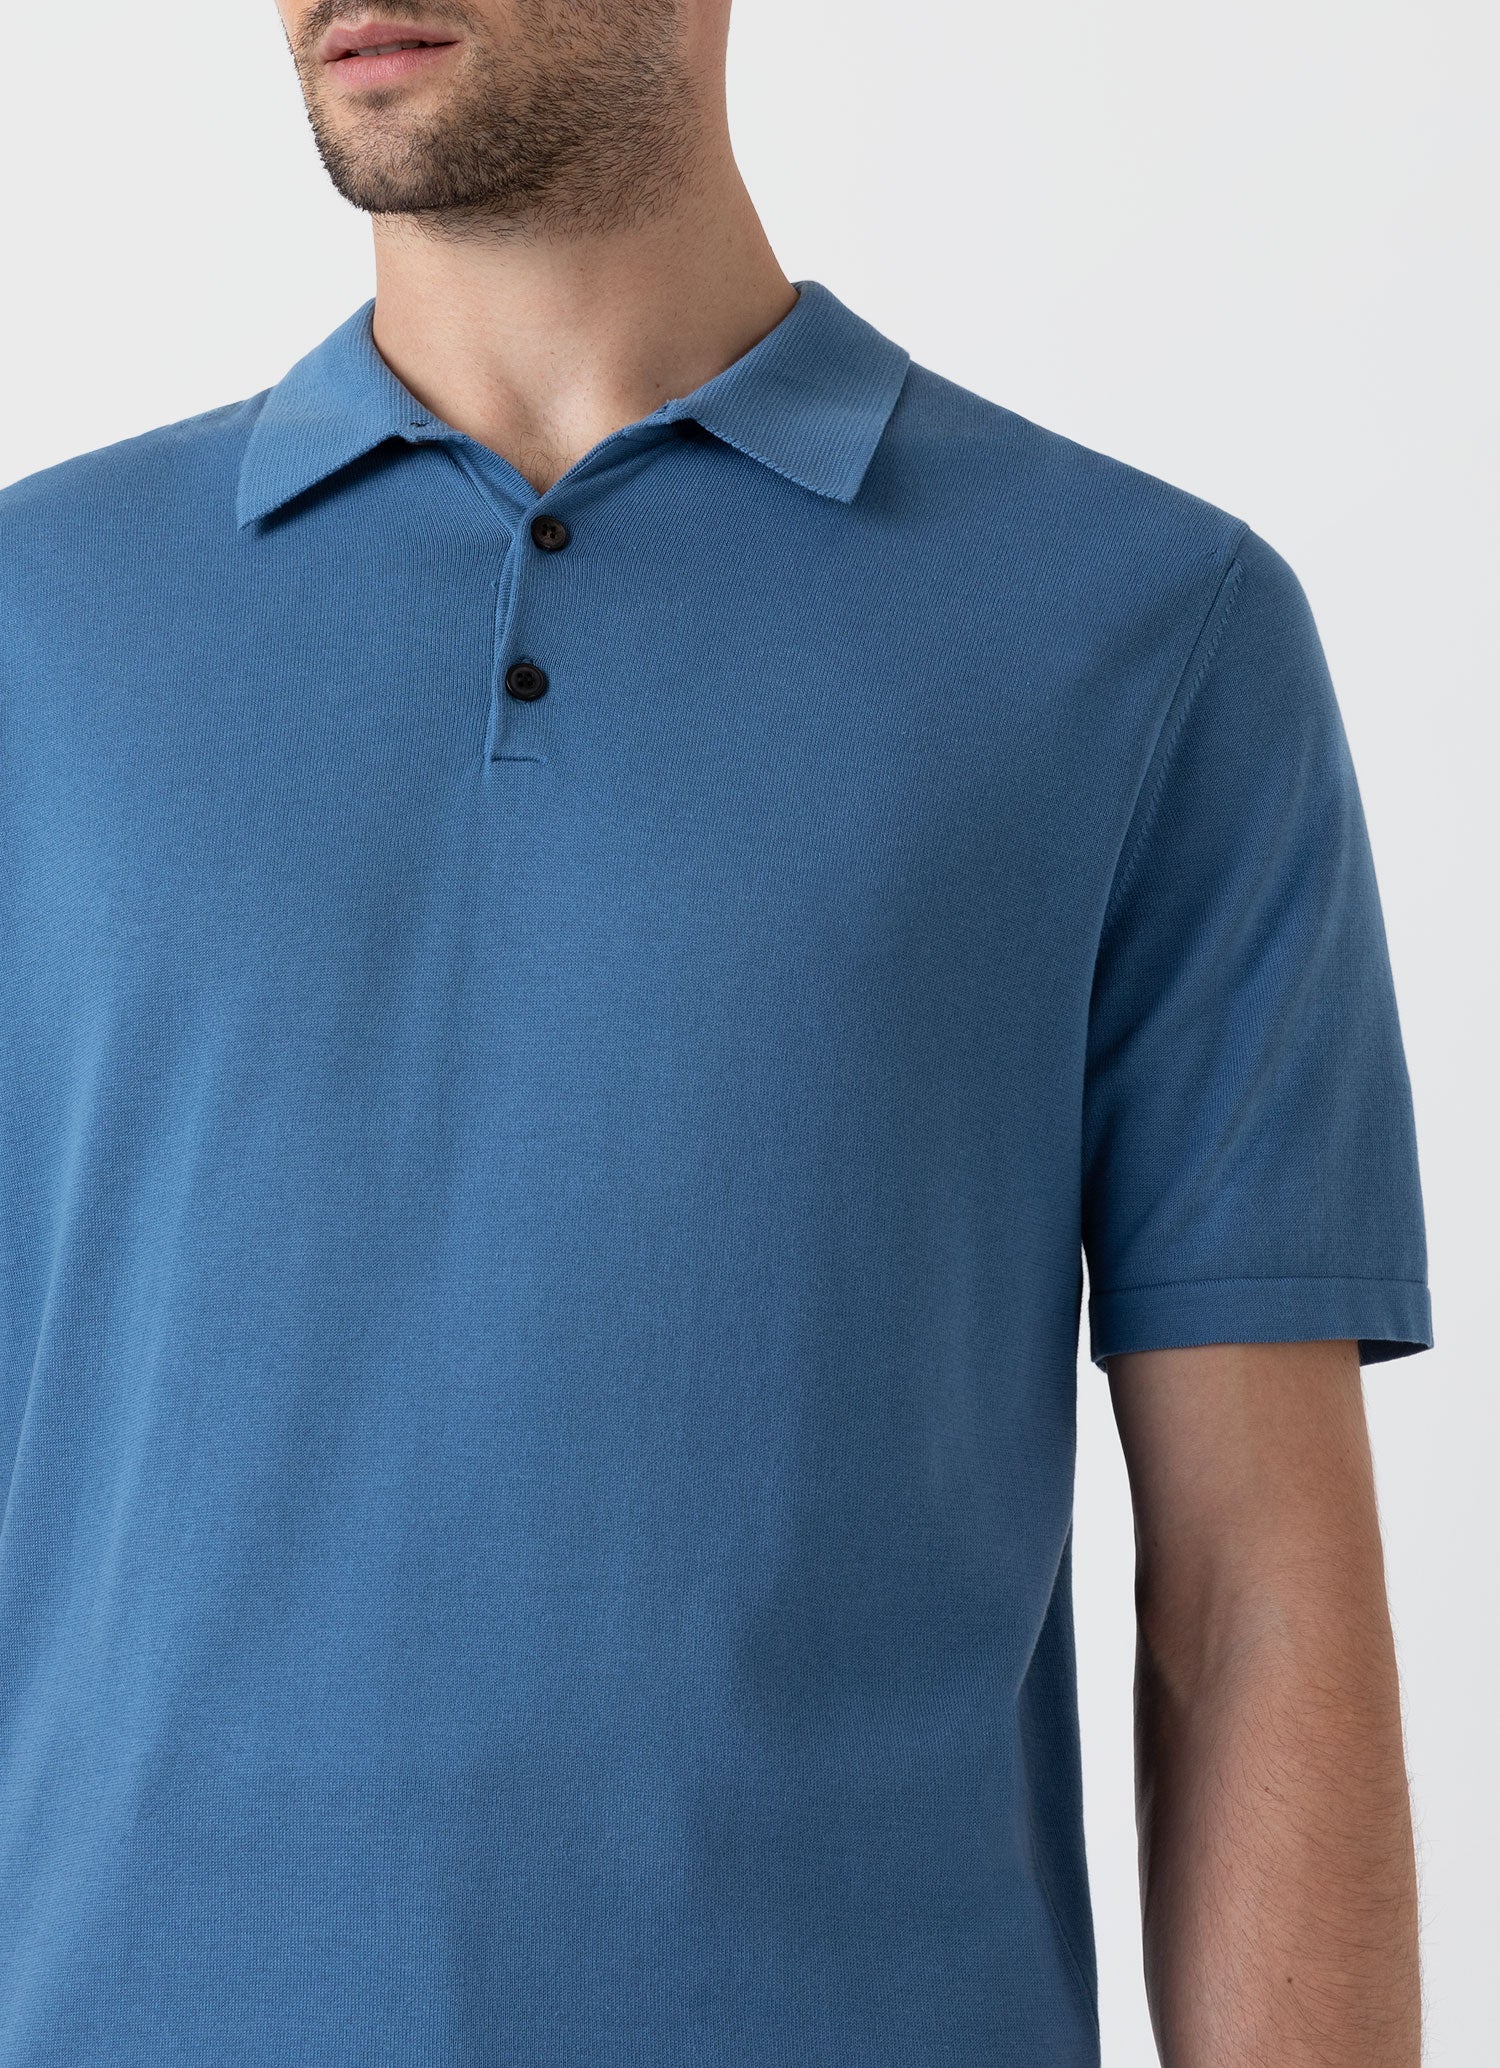 Men's Sea Island Cotton Polo Shirt in Bluestone